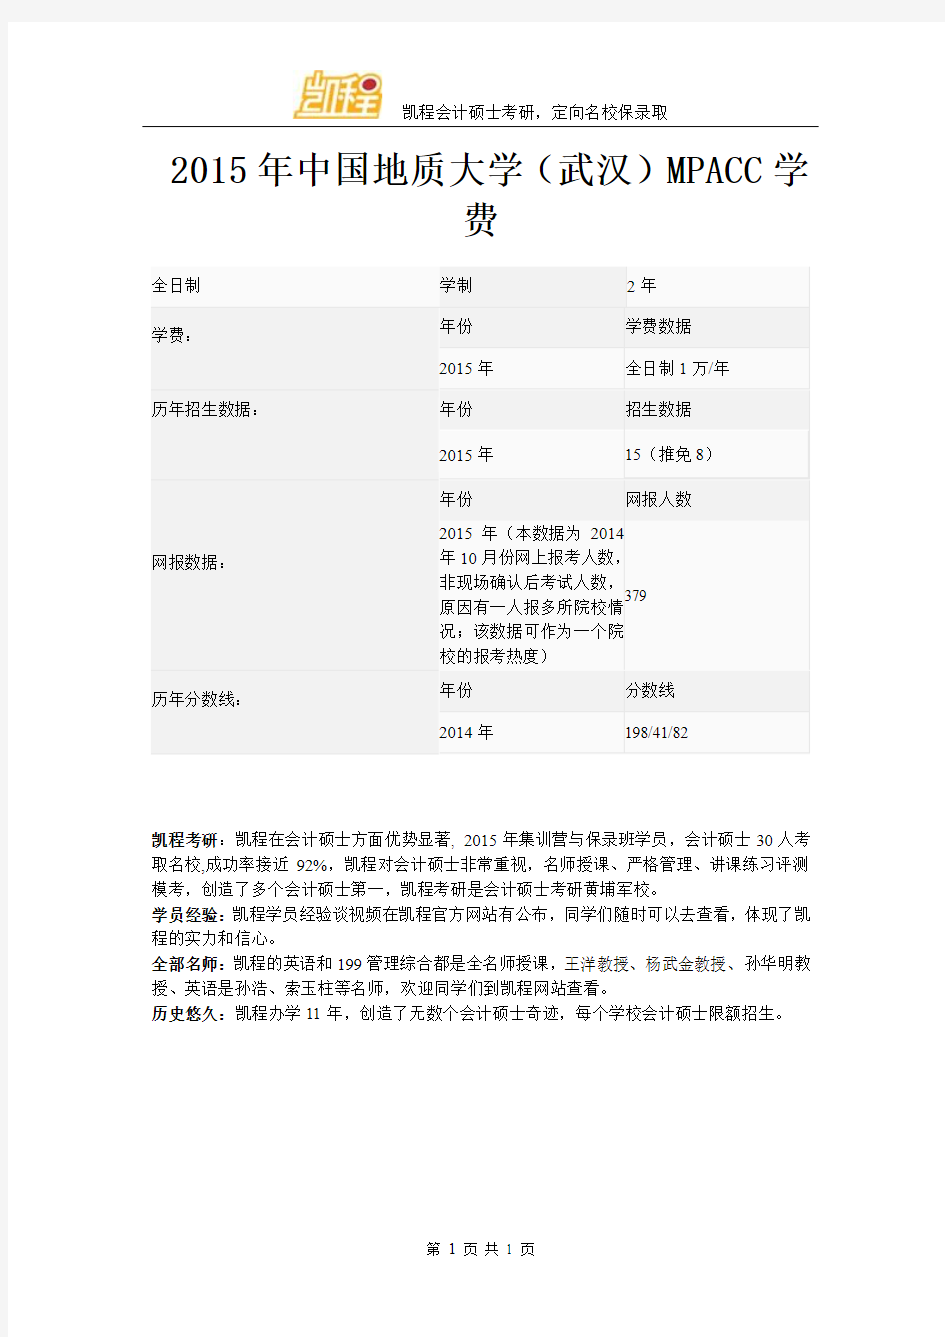 2015年中国地质大学(武汉)MPACC学费